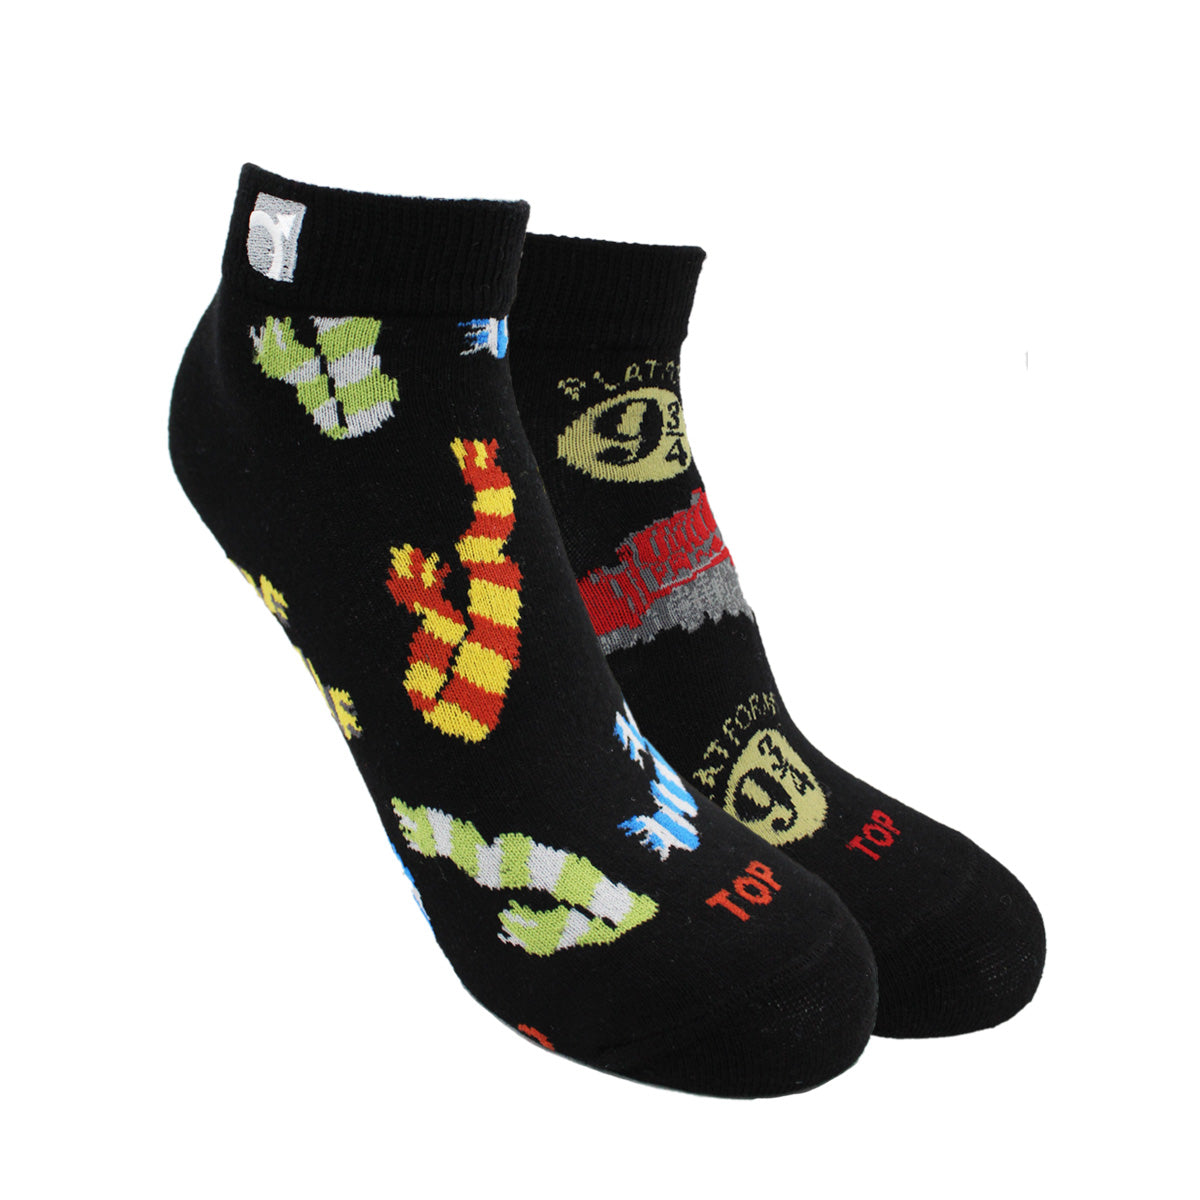 Pack de 3 pares de calcetines estampado Harry Potter para niño